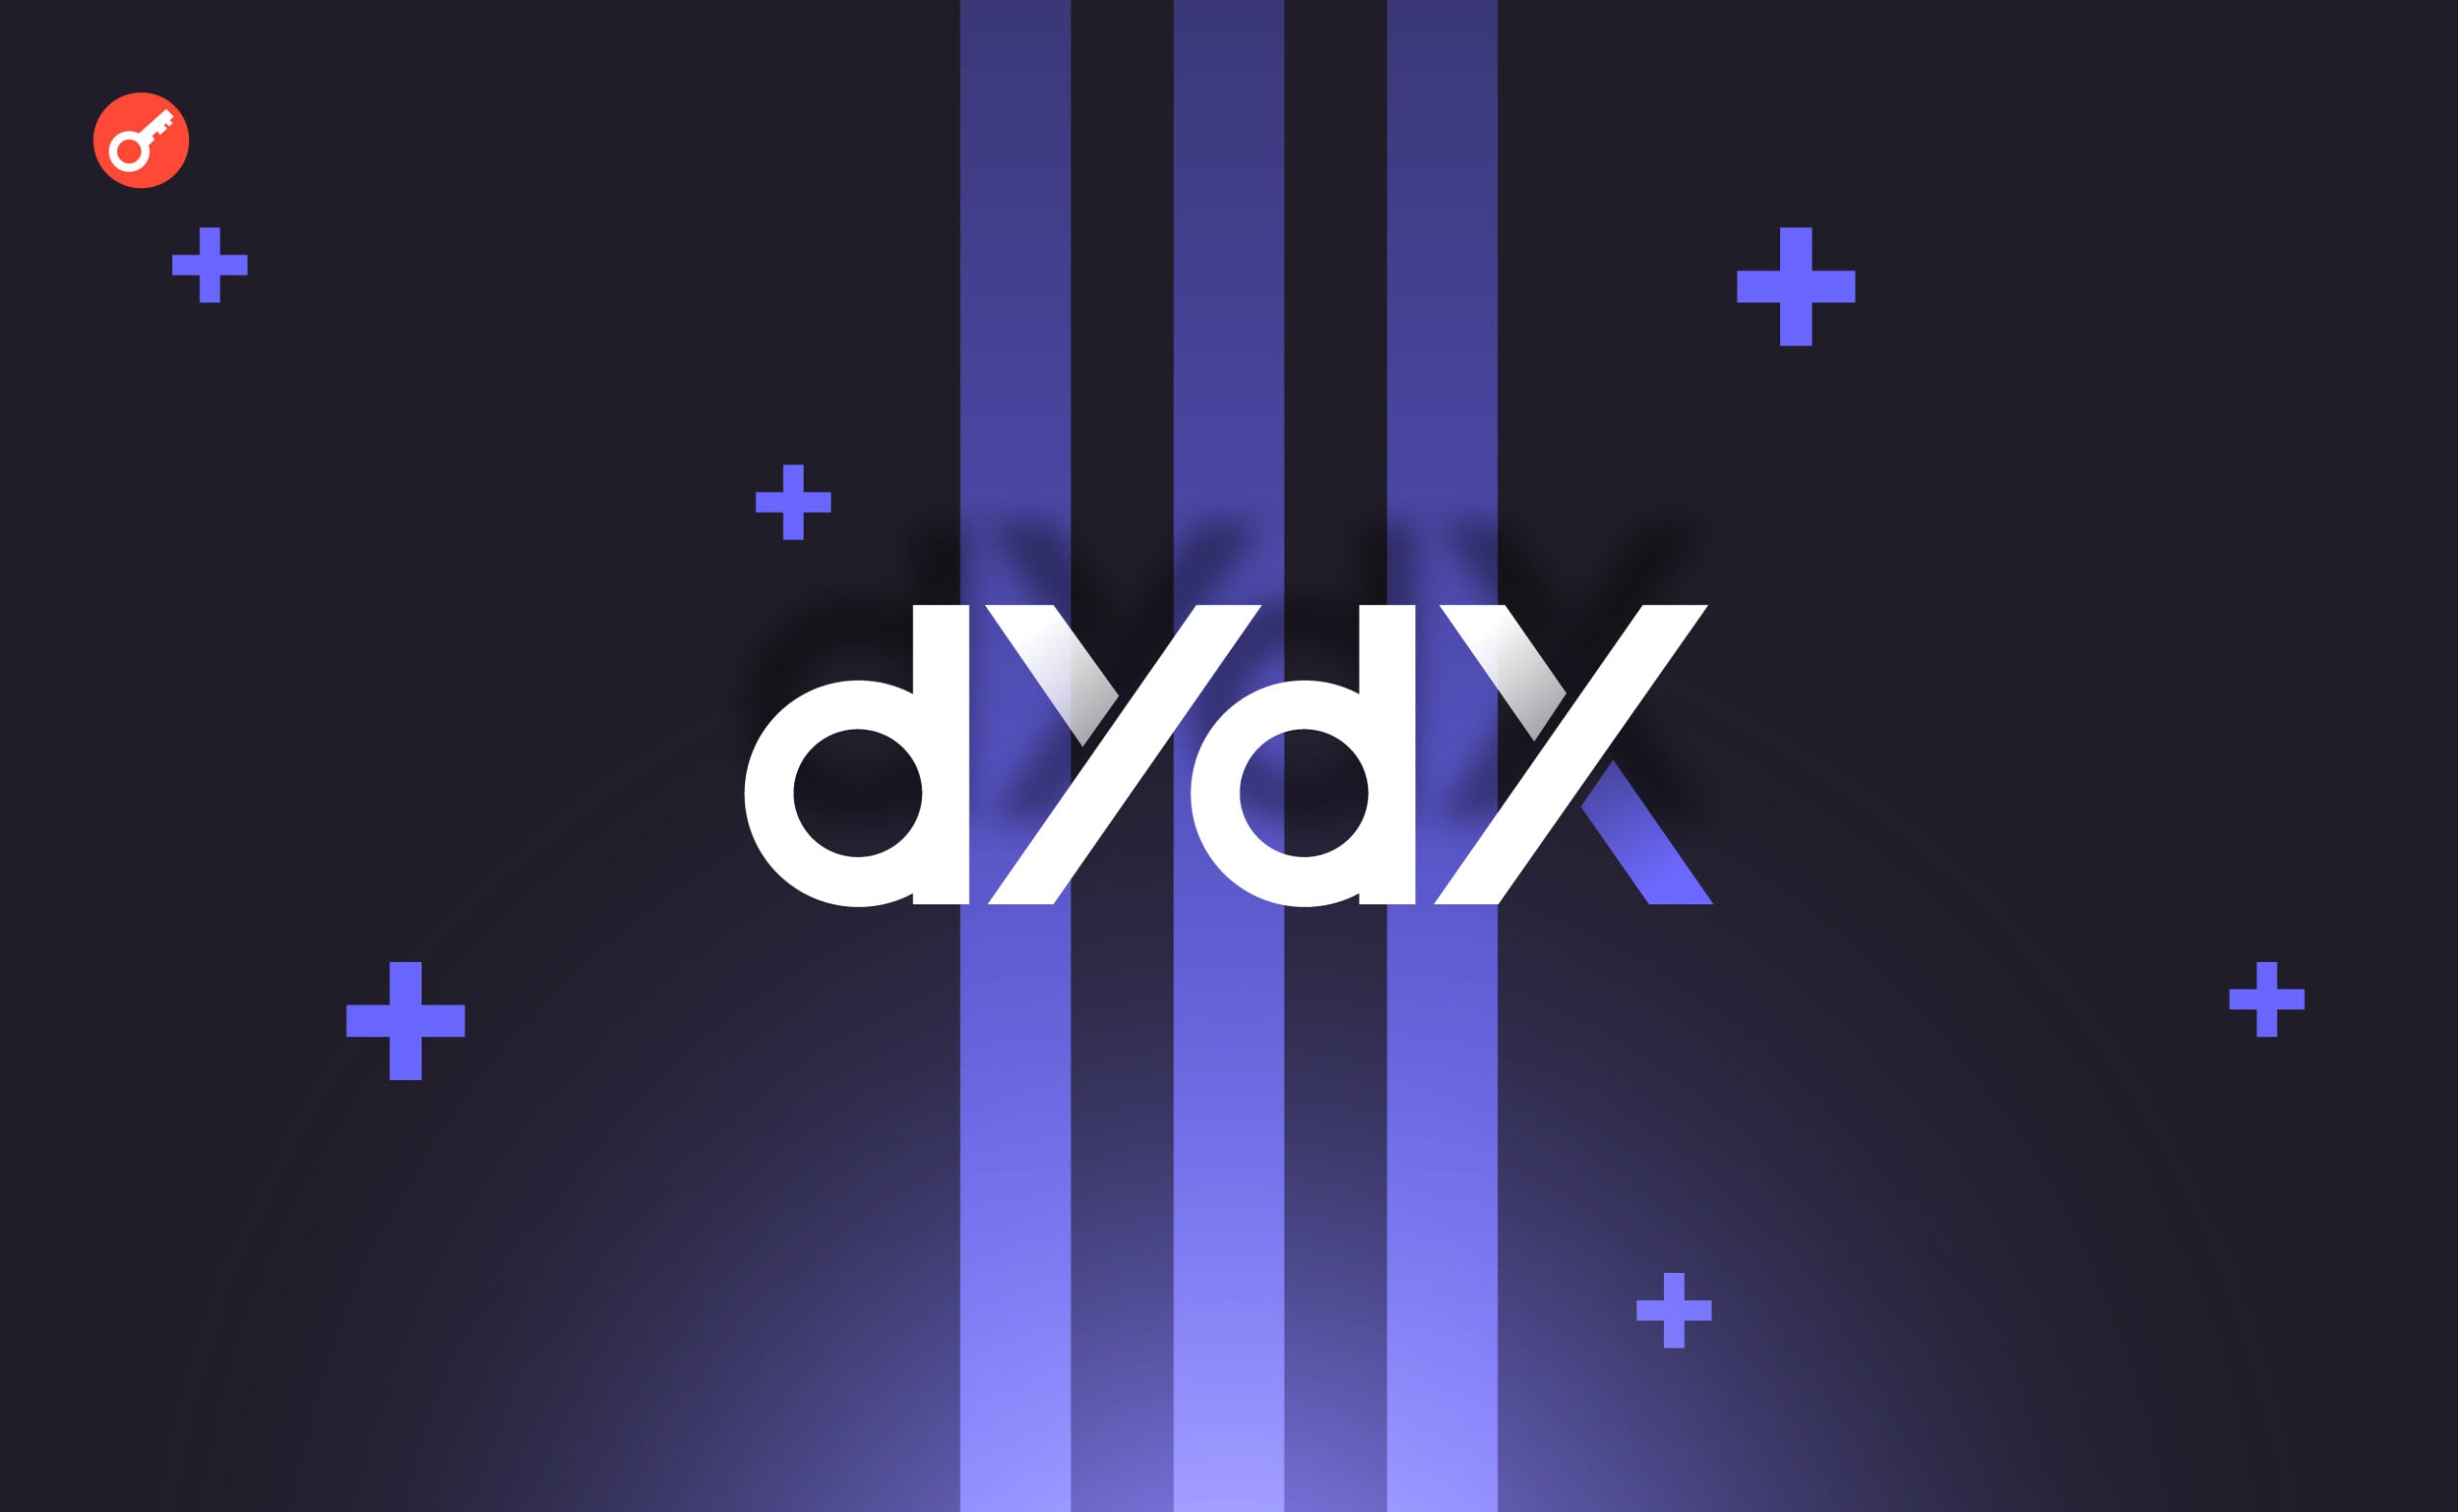 Проєкт dYdX запустив бета-версію мейннету і відкрив торгівлю активами. Головний колаж новини.